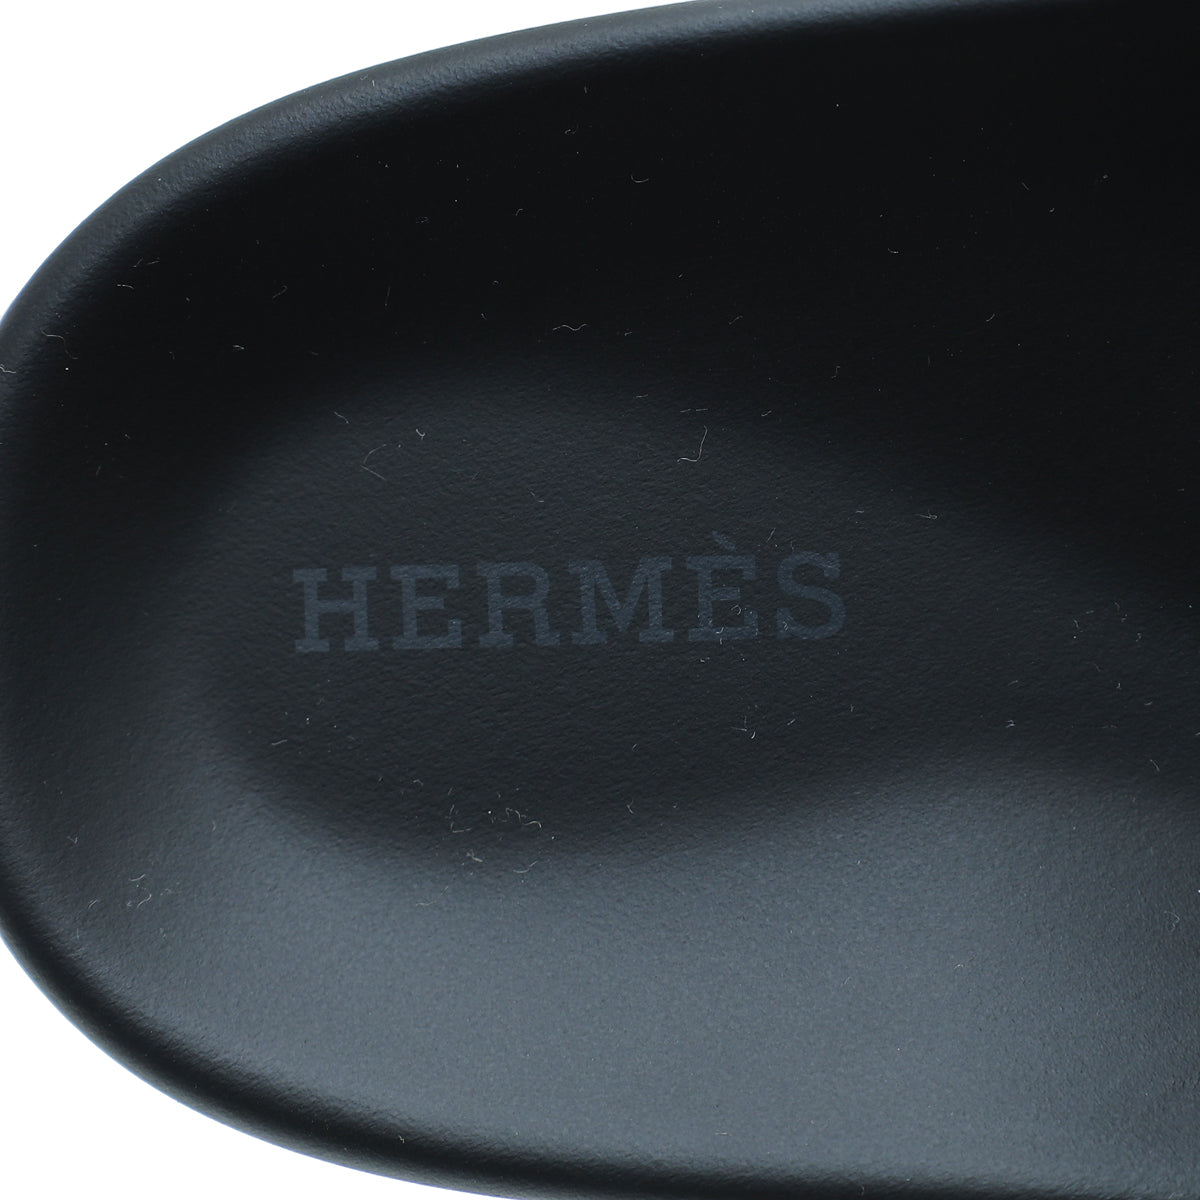 Hermes Vert Jade Chypre Sandal 39